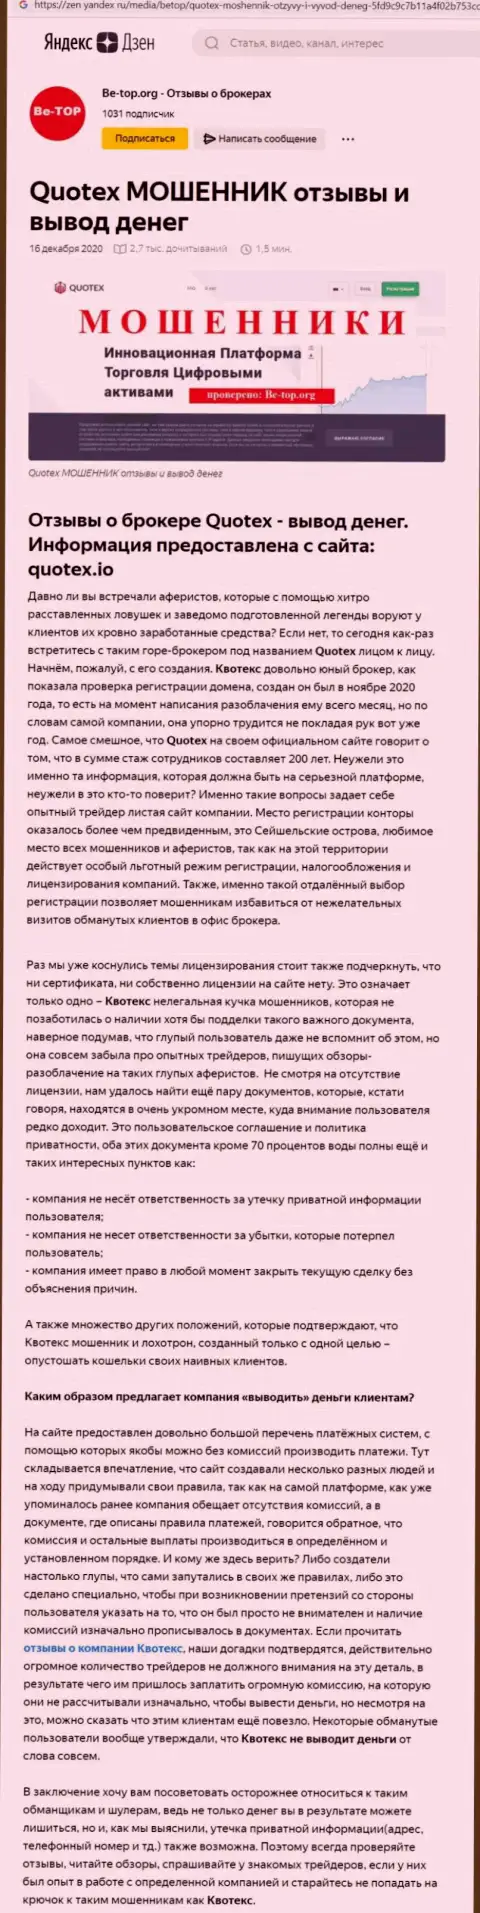 Обзор деятельности скам-организации Куотекс Ио - МОШЕННИКИ !!!